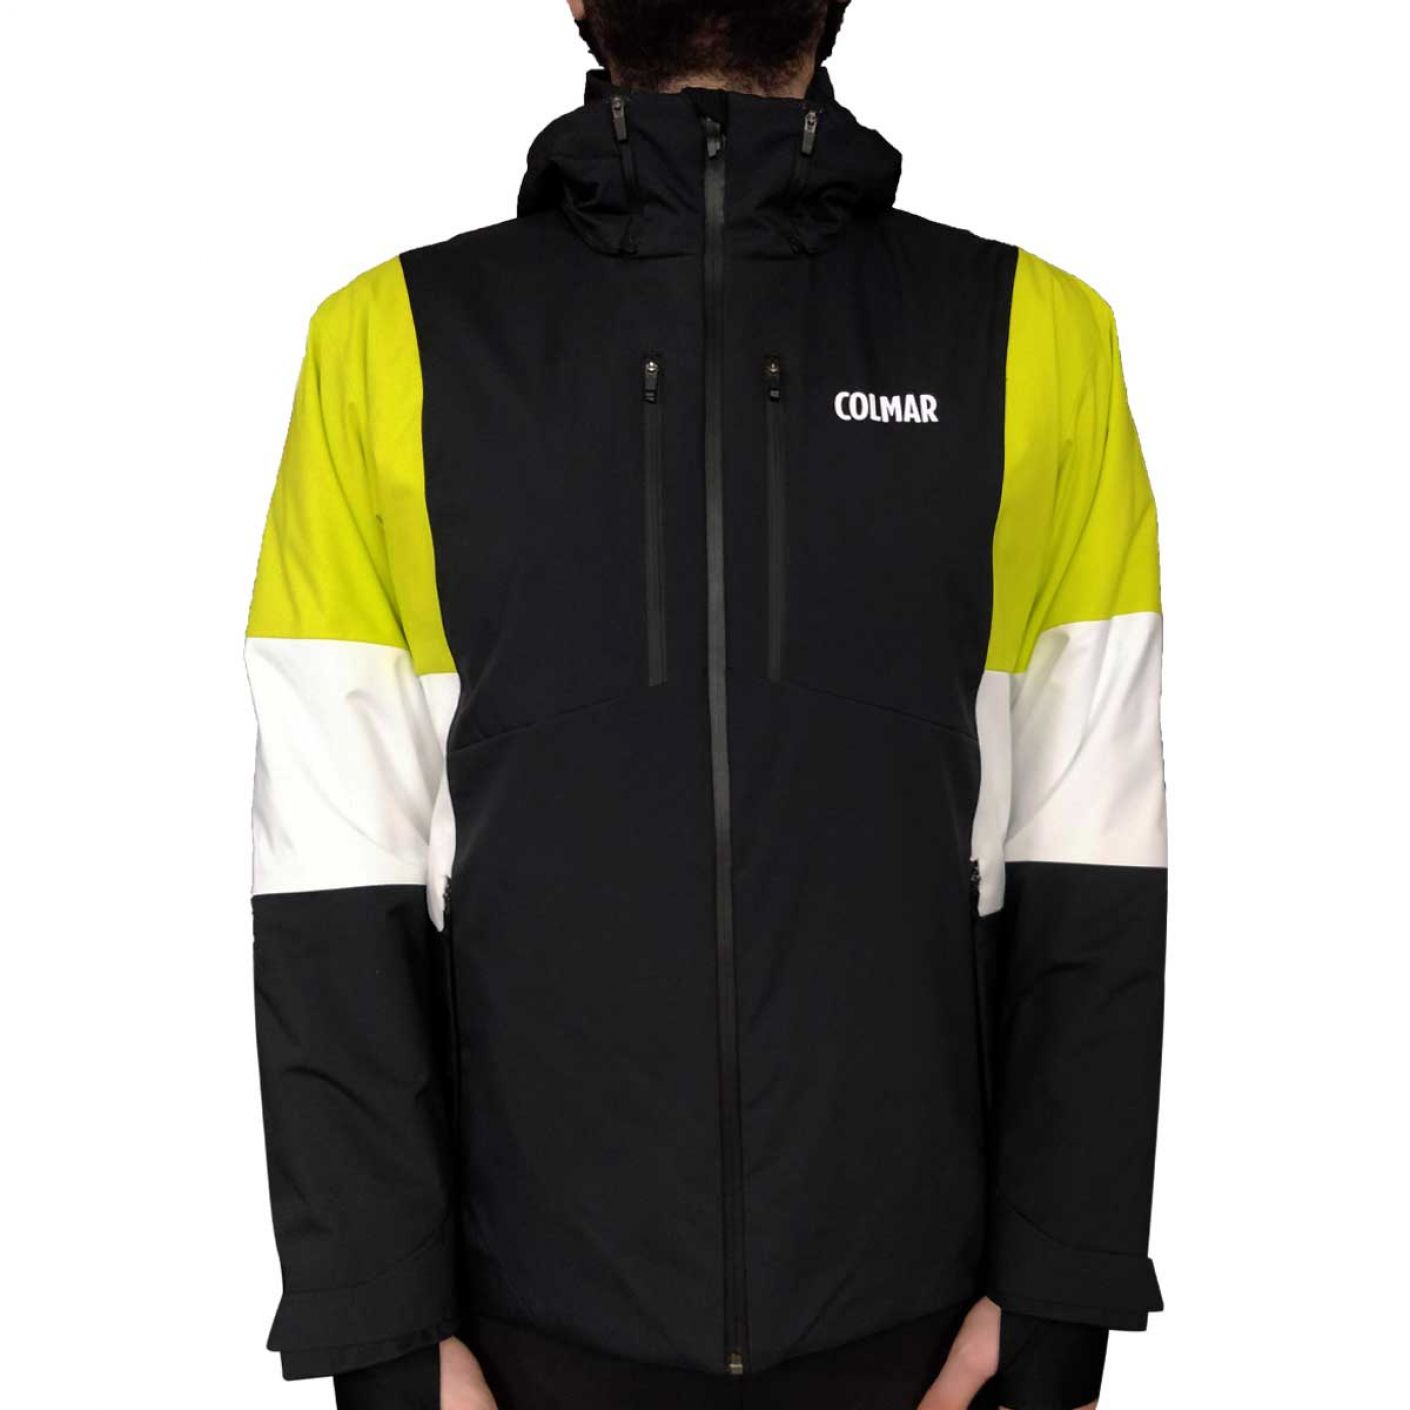 Colmar Men's Whistler Ski Jacket Black